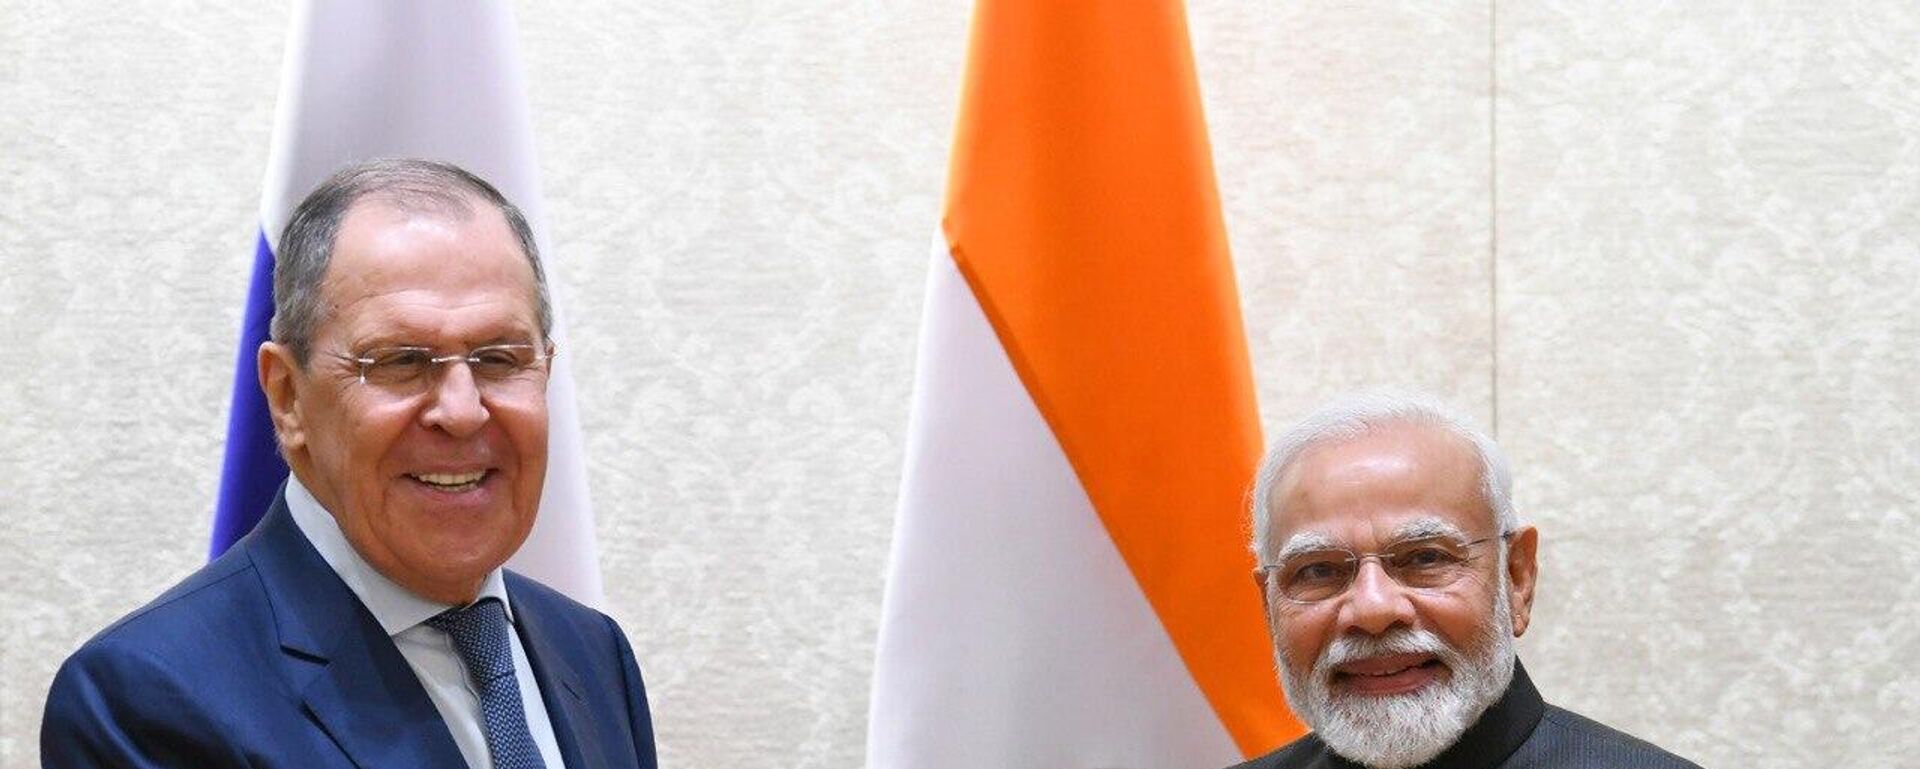 Rusya Dışişleri Bakanı Sergey Lavrov, Yeni Delhi ziyareti kapsamında Hindistan Başbakanı Narendra Modi'yle bir görüşme gerçekleştirdi. - Sputnik Türkiye, 1920, 01.04.2022